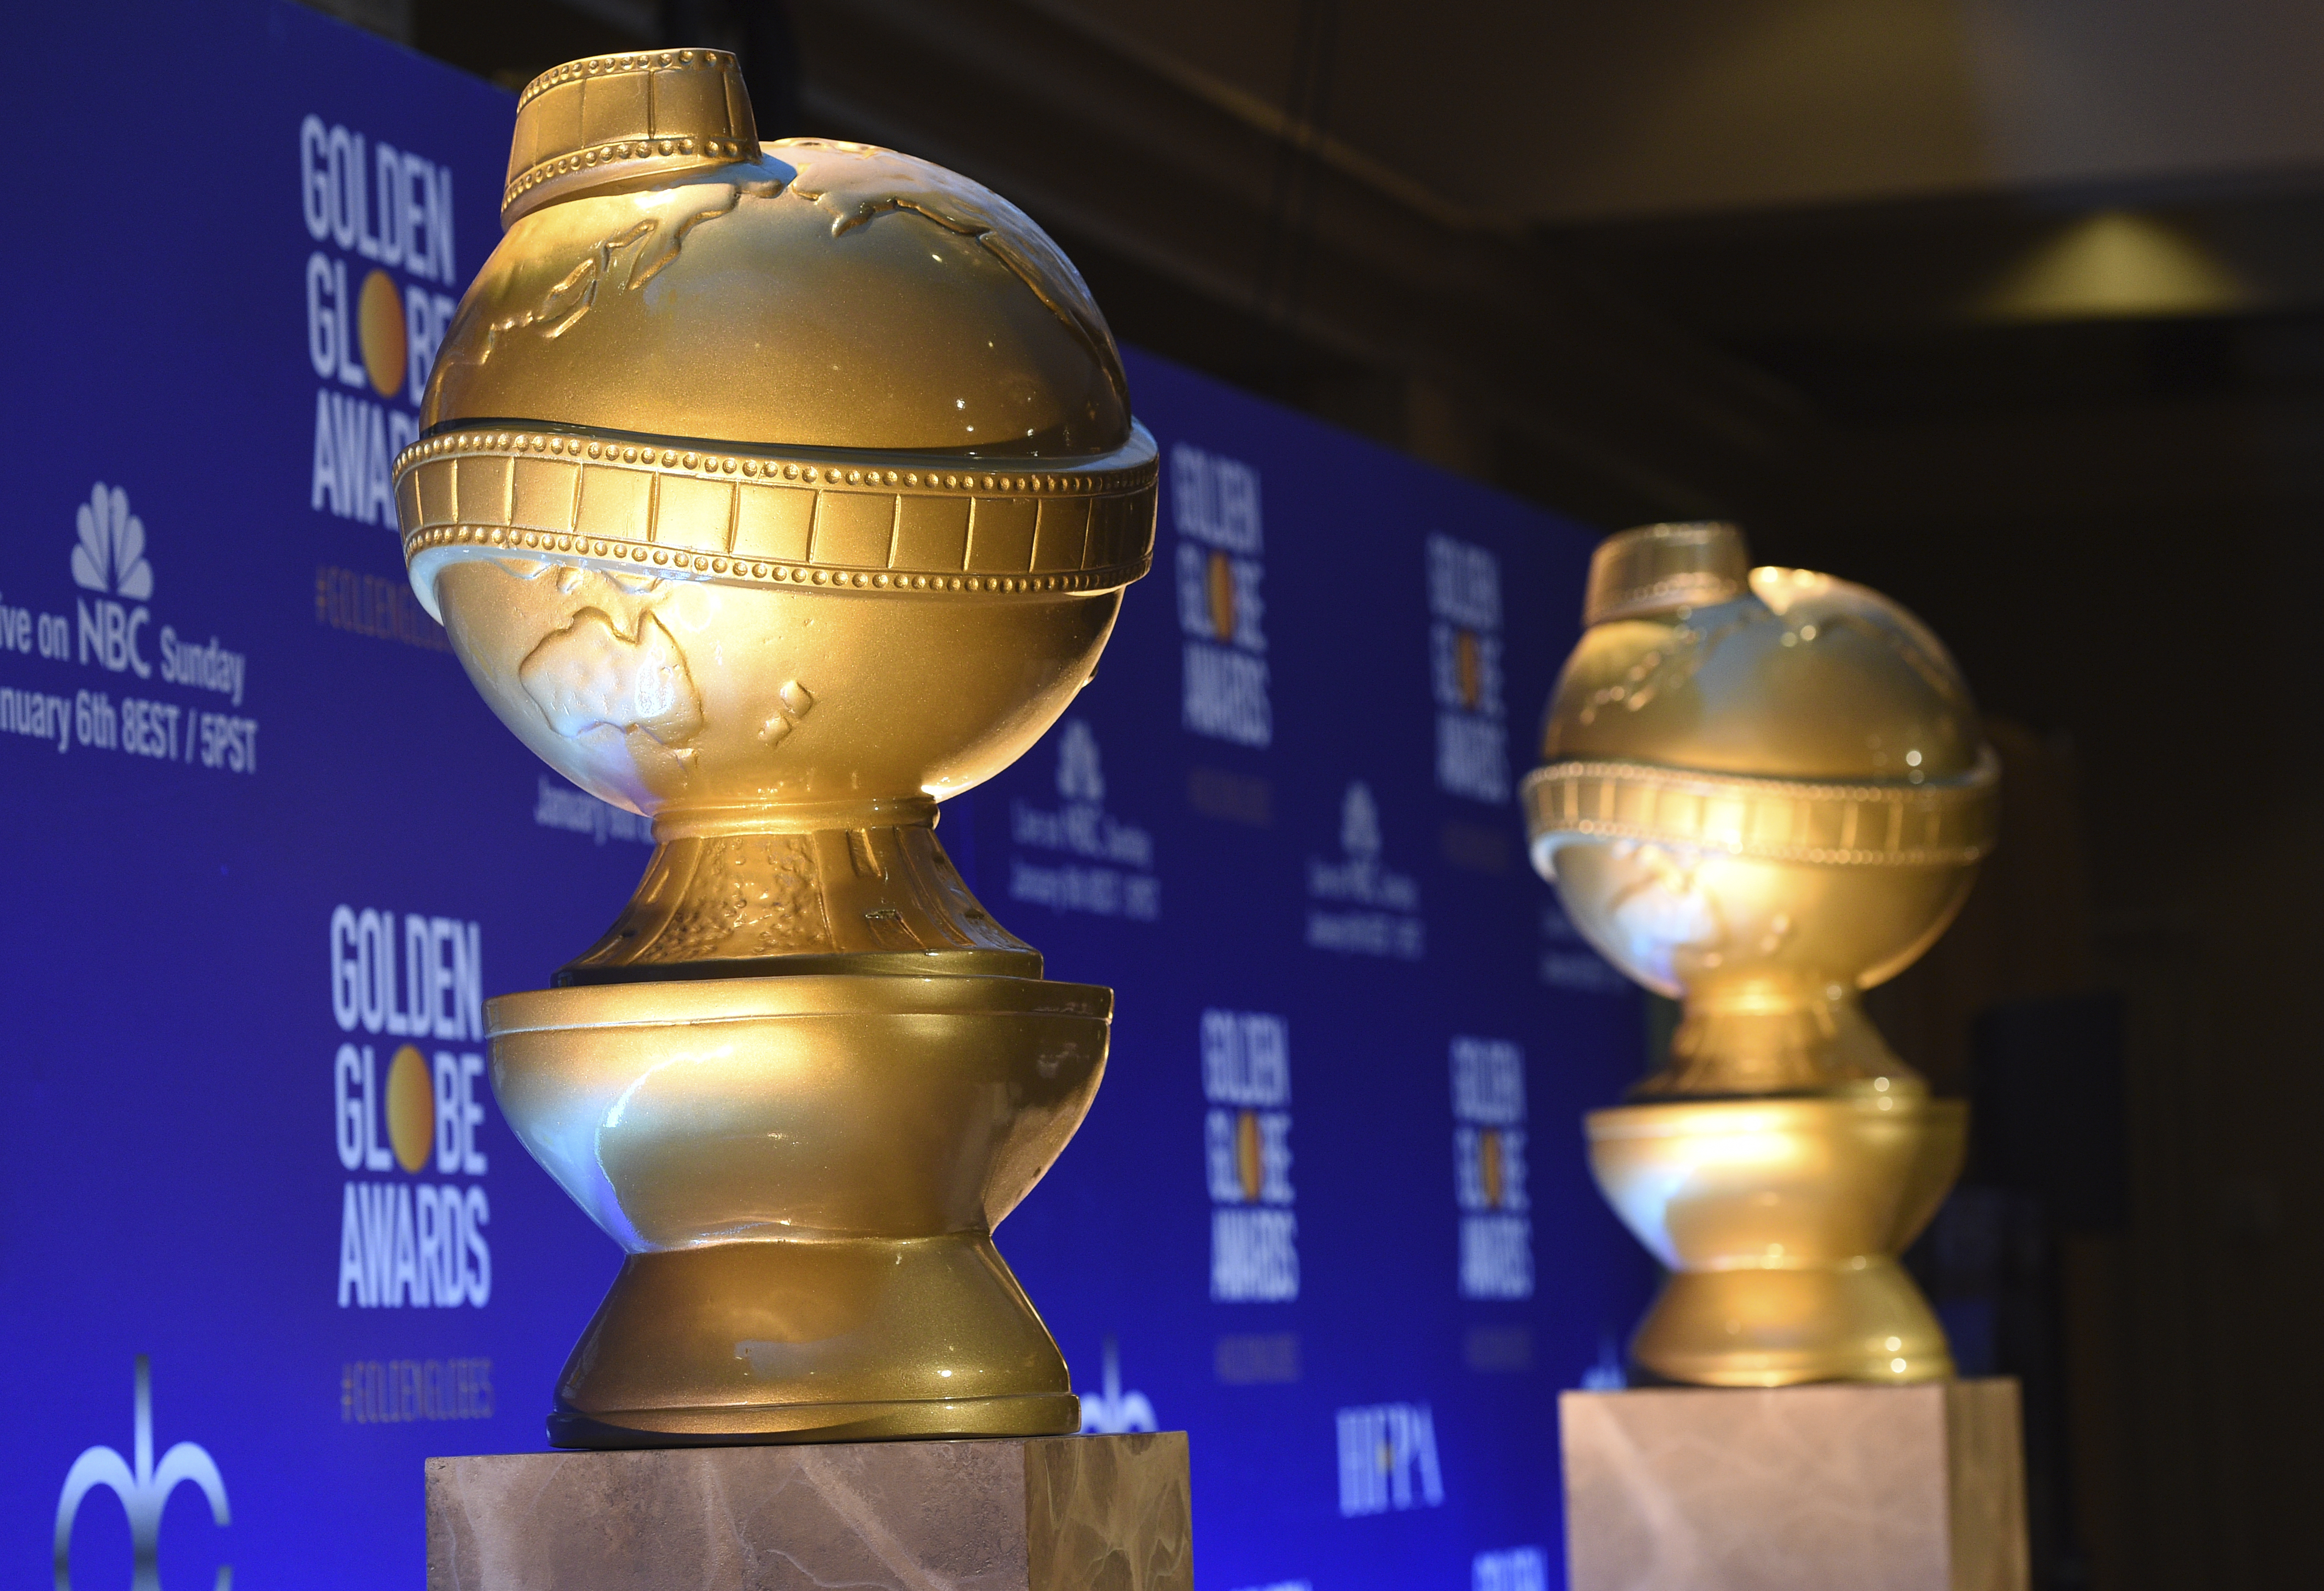 The Golden Globe awards 2019